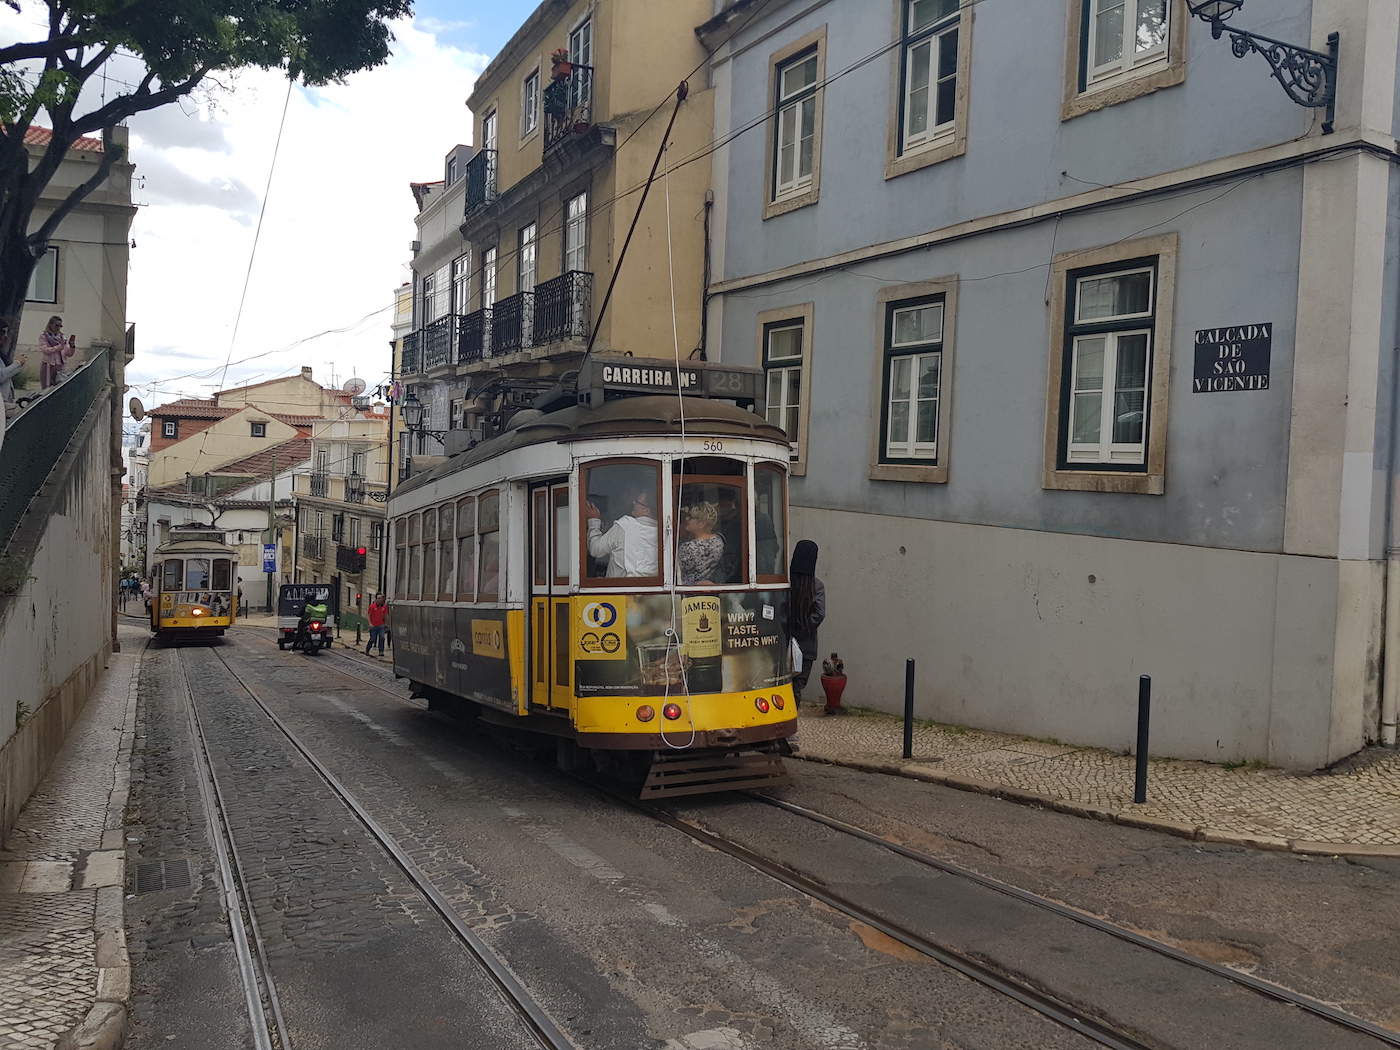 Trams in Lissabon highlights